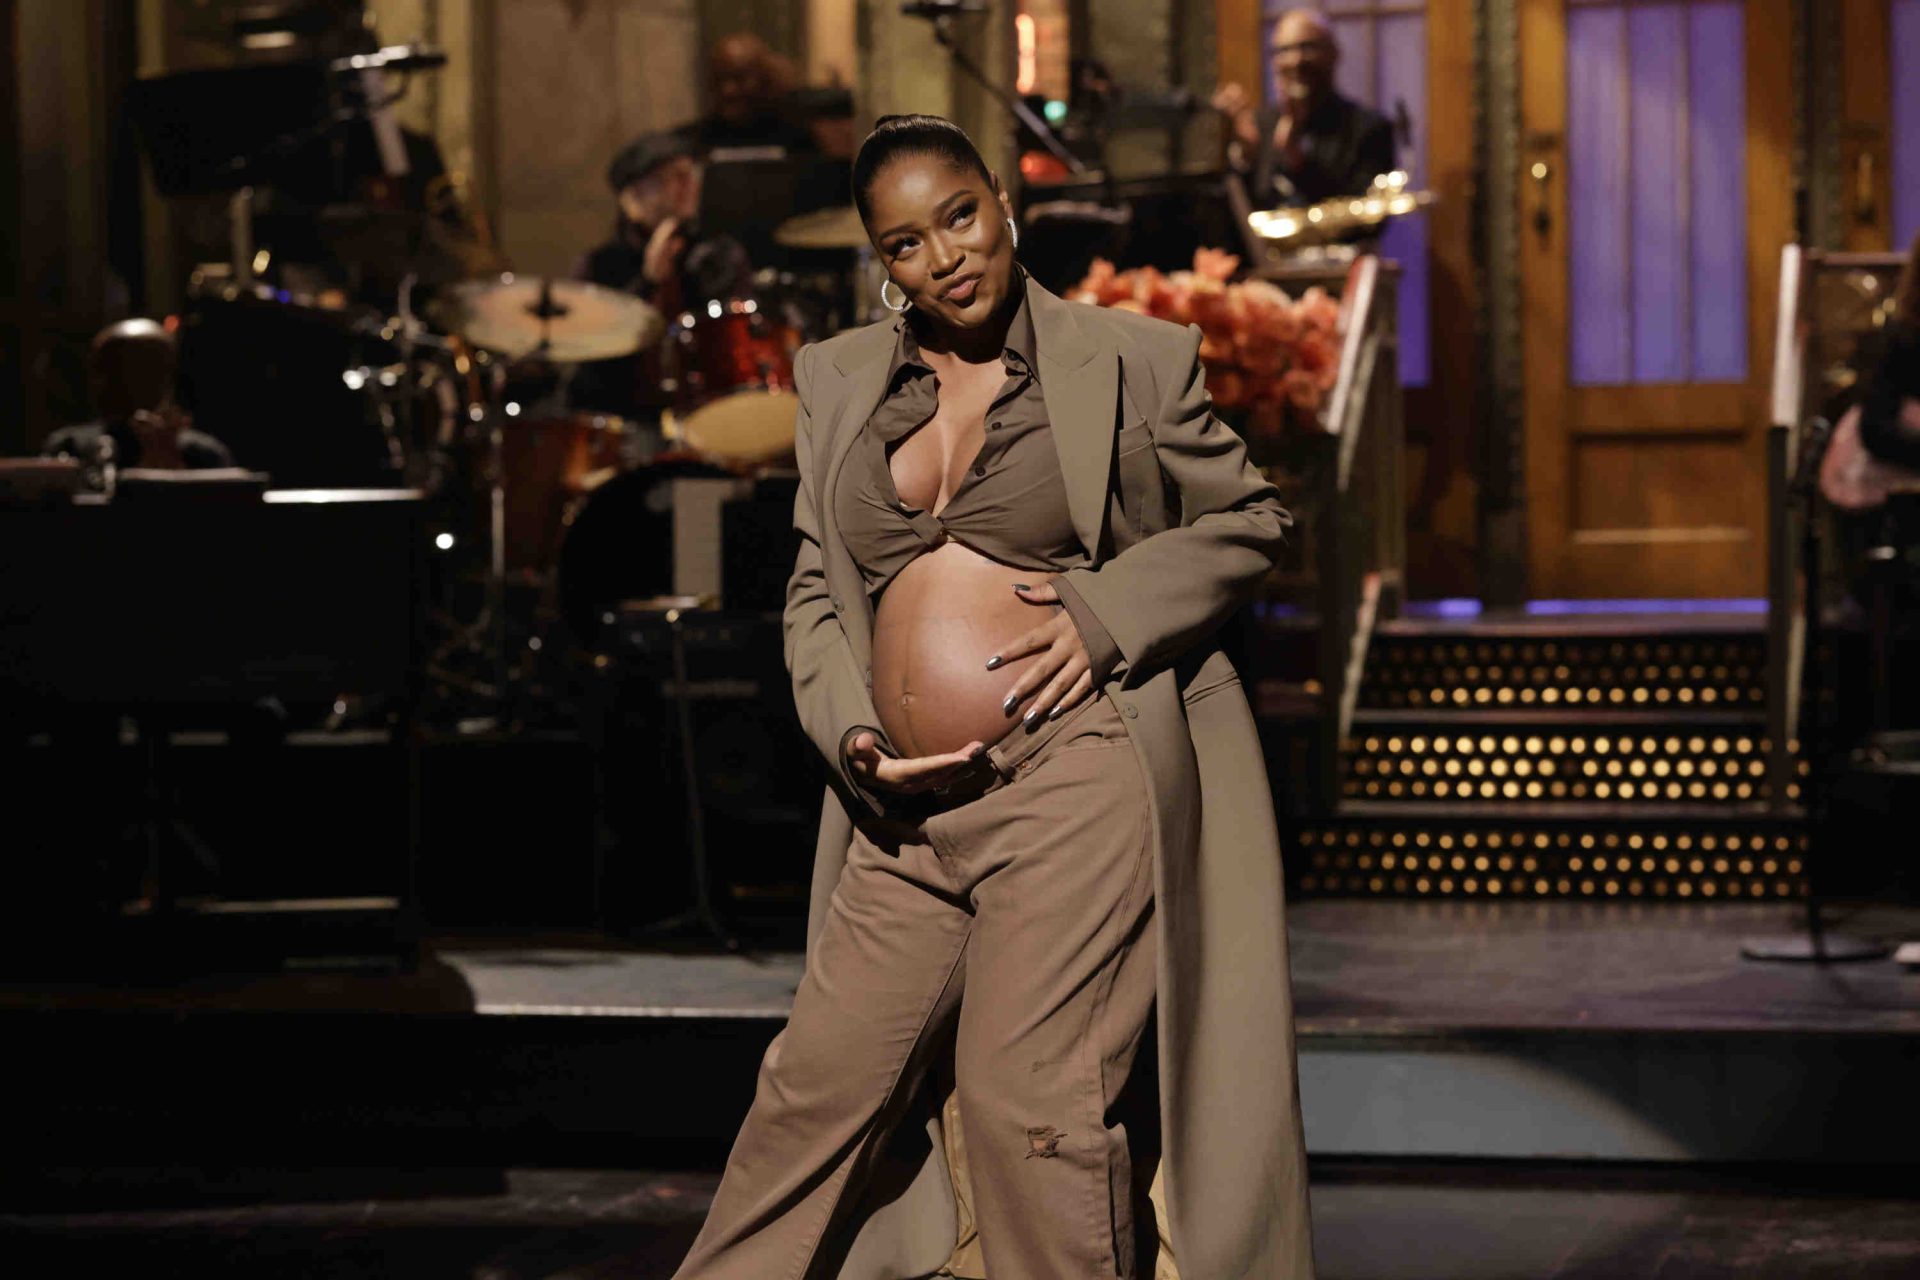 Keke Palmer pronkt met haar babybultje nadat ze haar zwangerschap had aangekondigd in 'Saturday Night Live' (reacties)